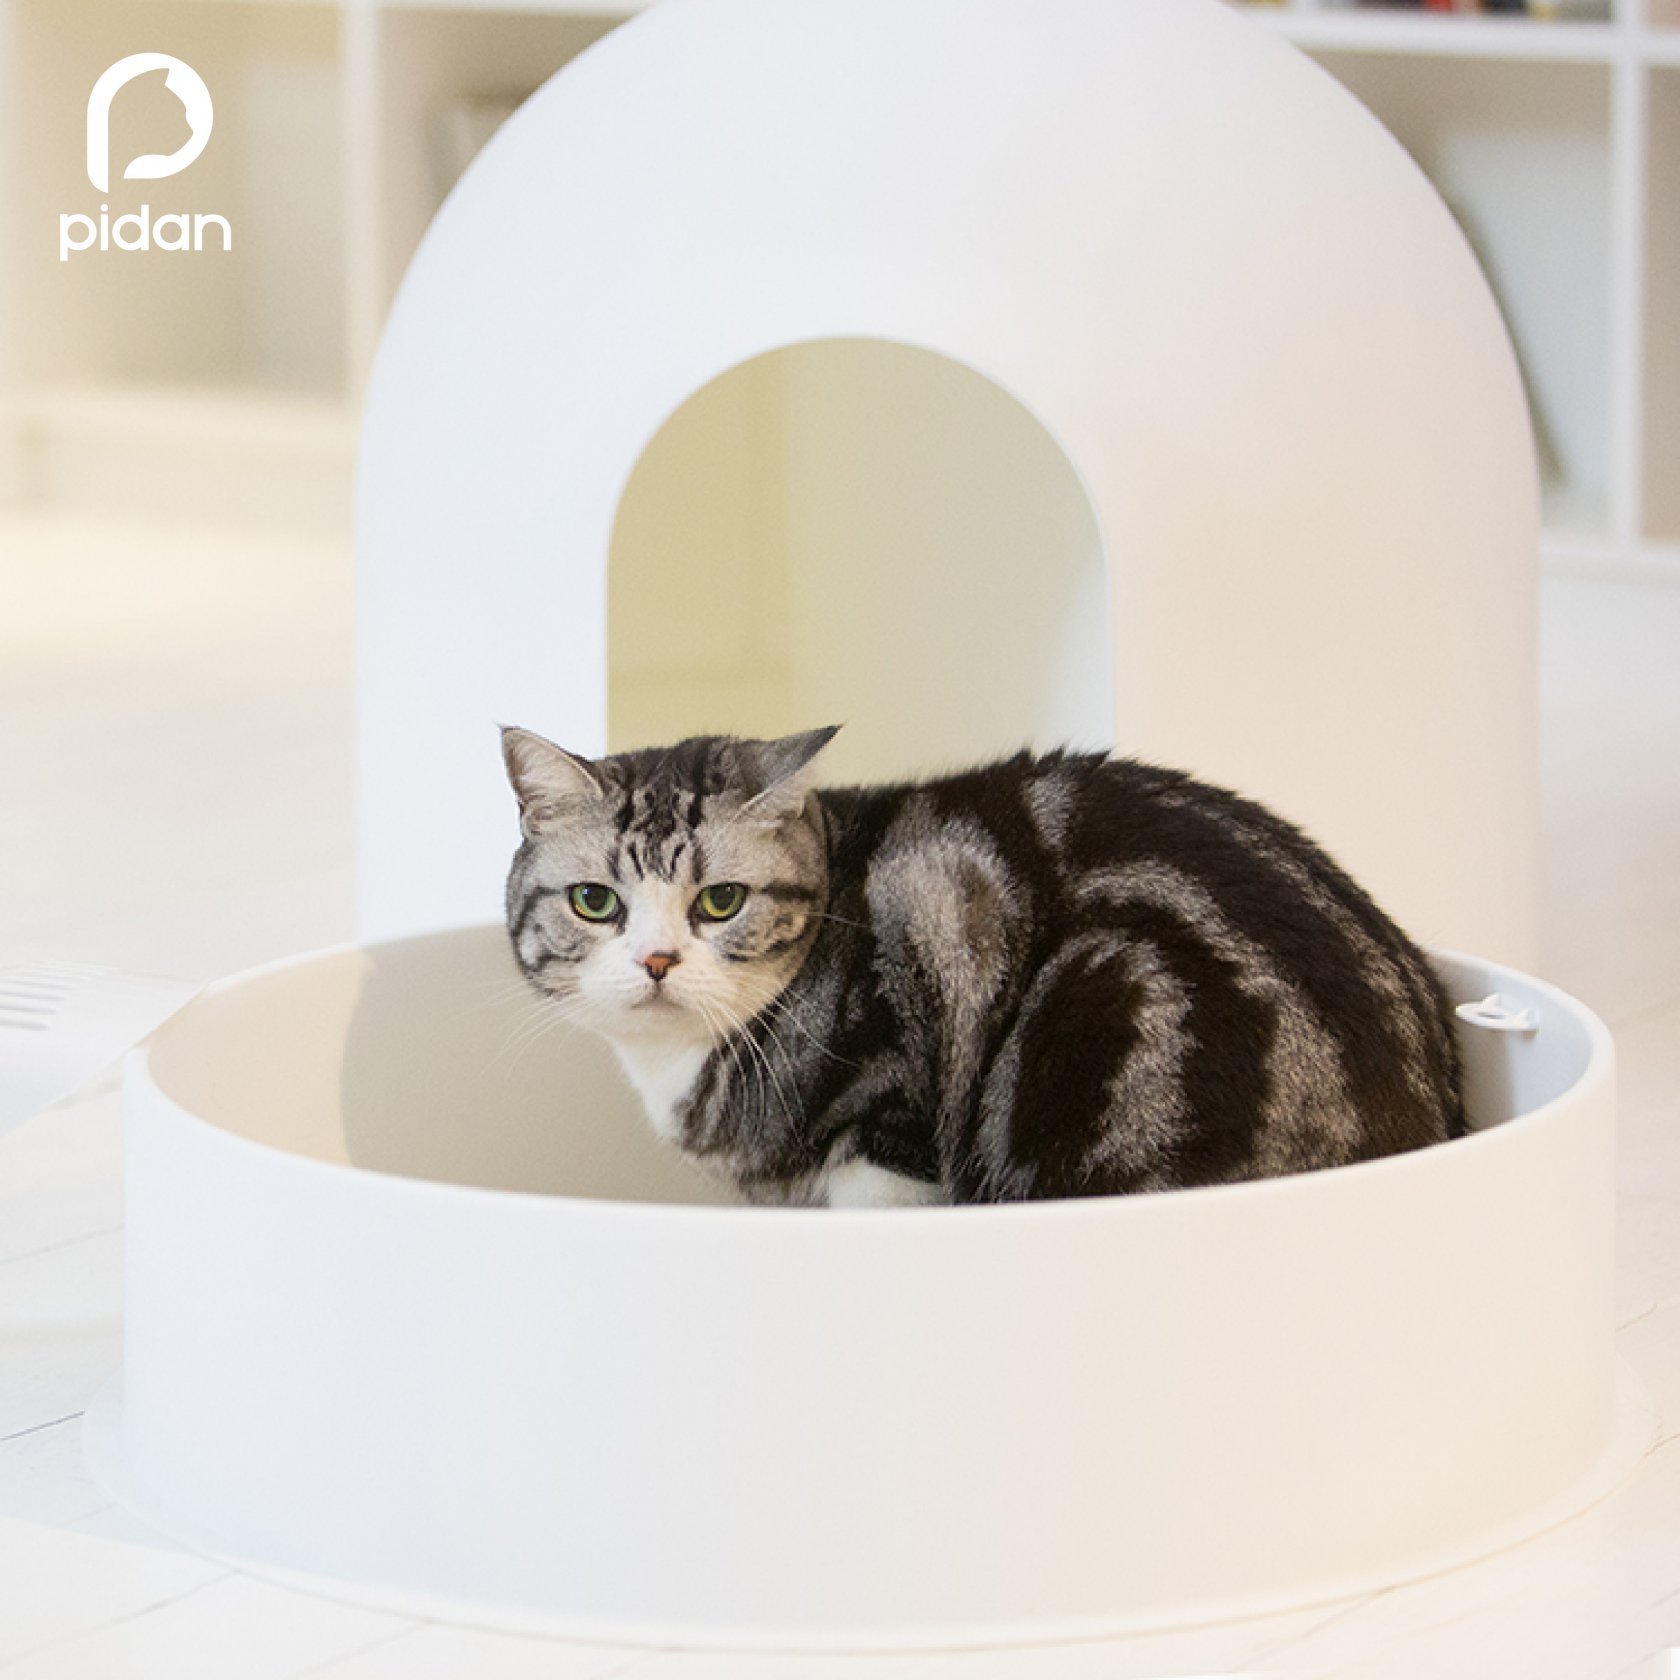 Игла кошки. Pidan Igloo Cat Litter Box. Pidan лоток. Pidan туалет для кошек. Туалет-домик для кошек pidan Igloo Cat Litter Box 54.8х52х49.2 см.